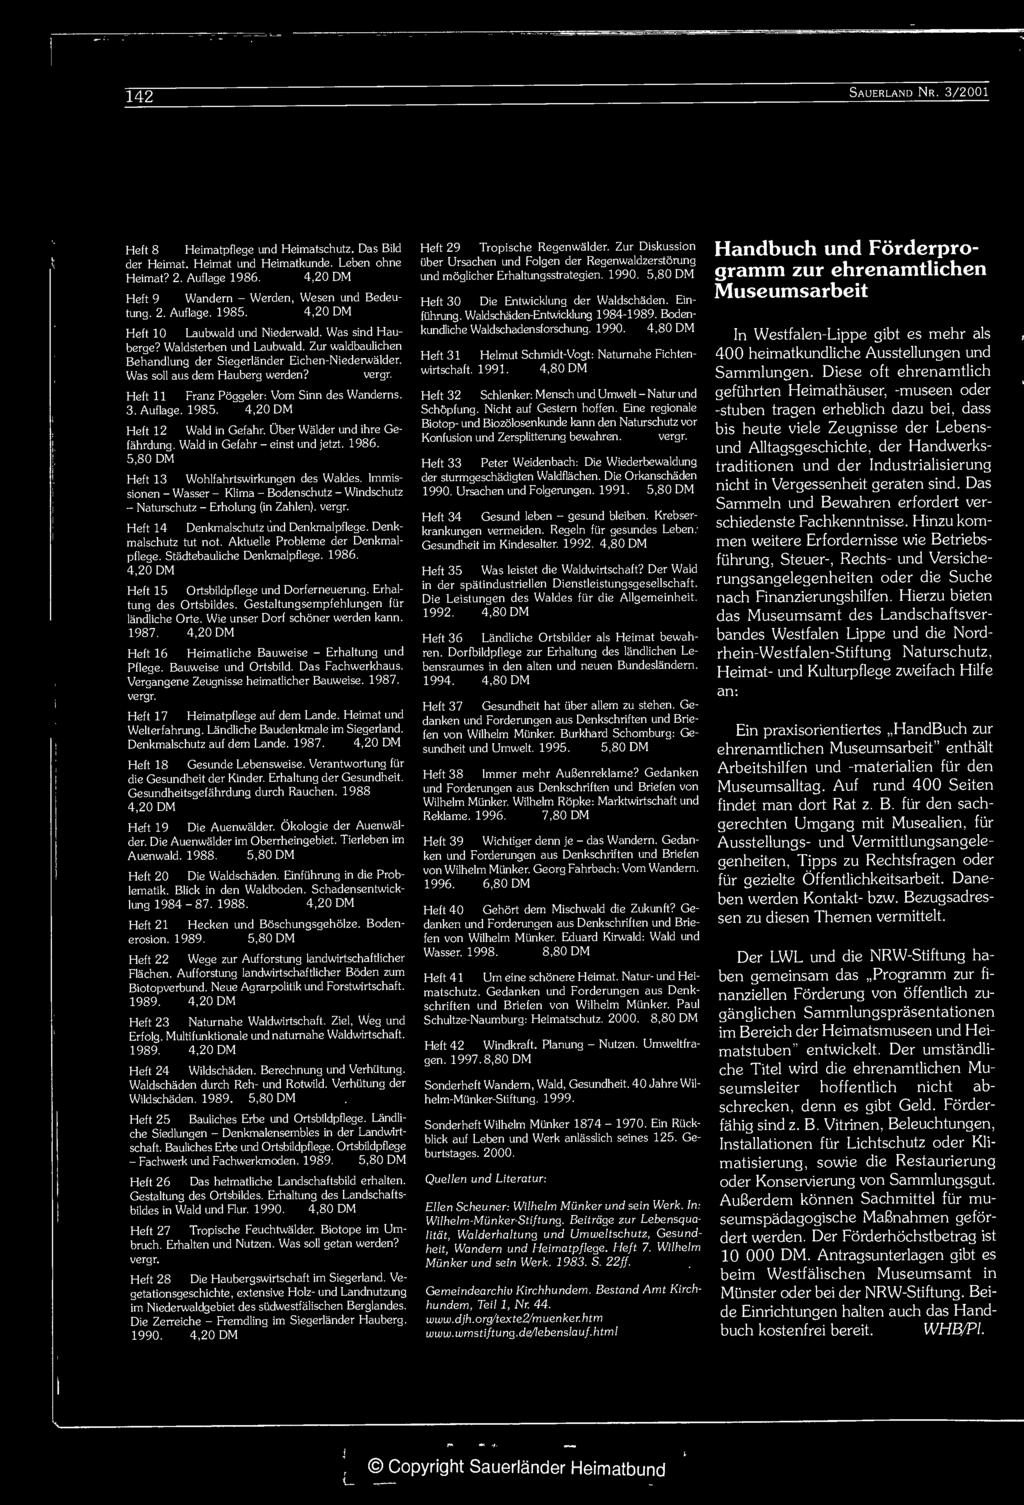 Denkmalschutz tut not. Aktuelle Probleme der Denkmalpflege. Stadtebauliche Denkmalpflege. 1986. 4,20 DM Heft 15 Ortsbildpflege und Dorlerneuerung. Erhaltung des Ortsbildes.